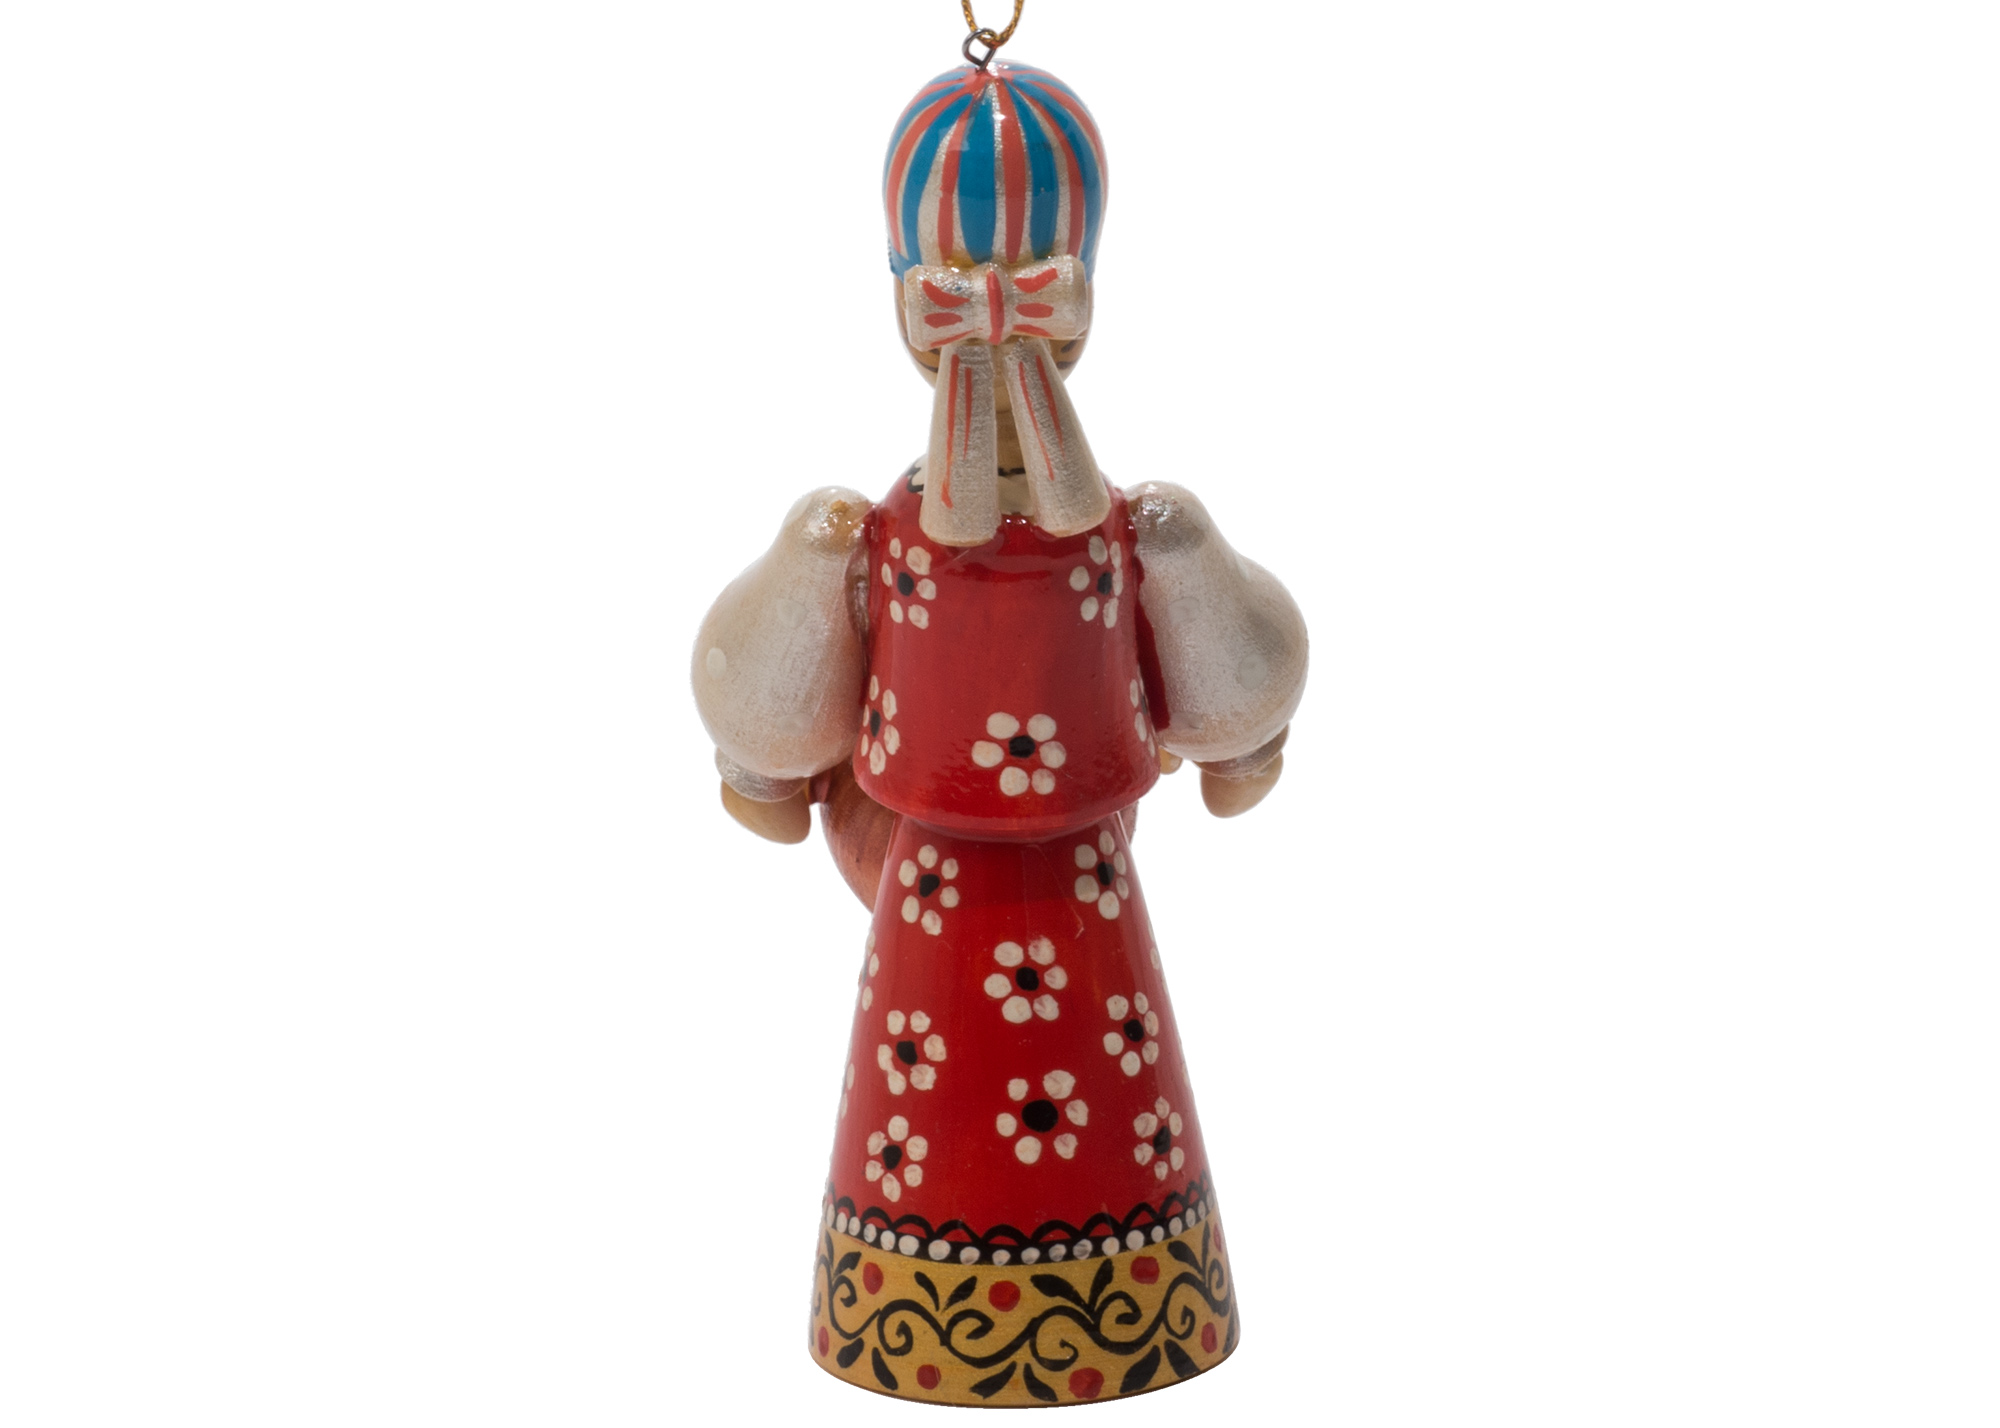 Buy Russian Folk Samovar Lady Ornament 4.25" at GoldenCockerel.com